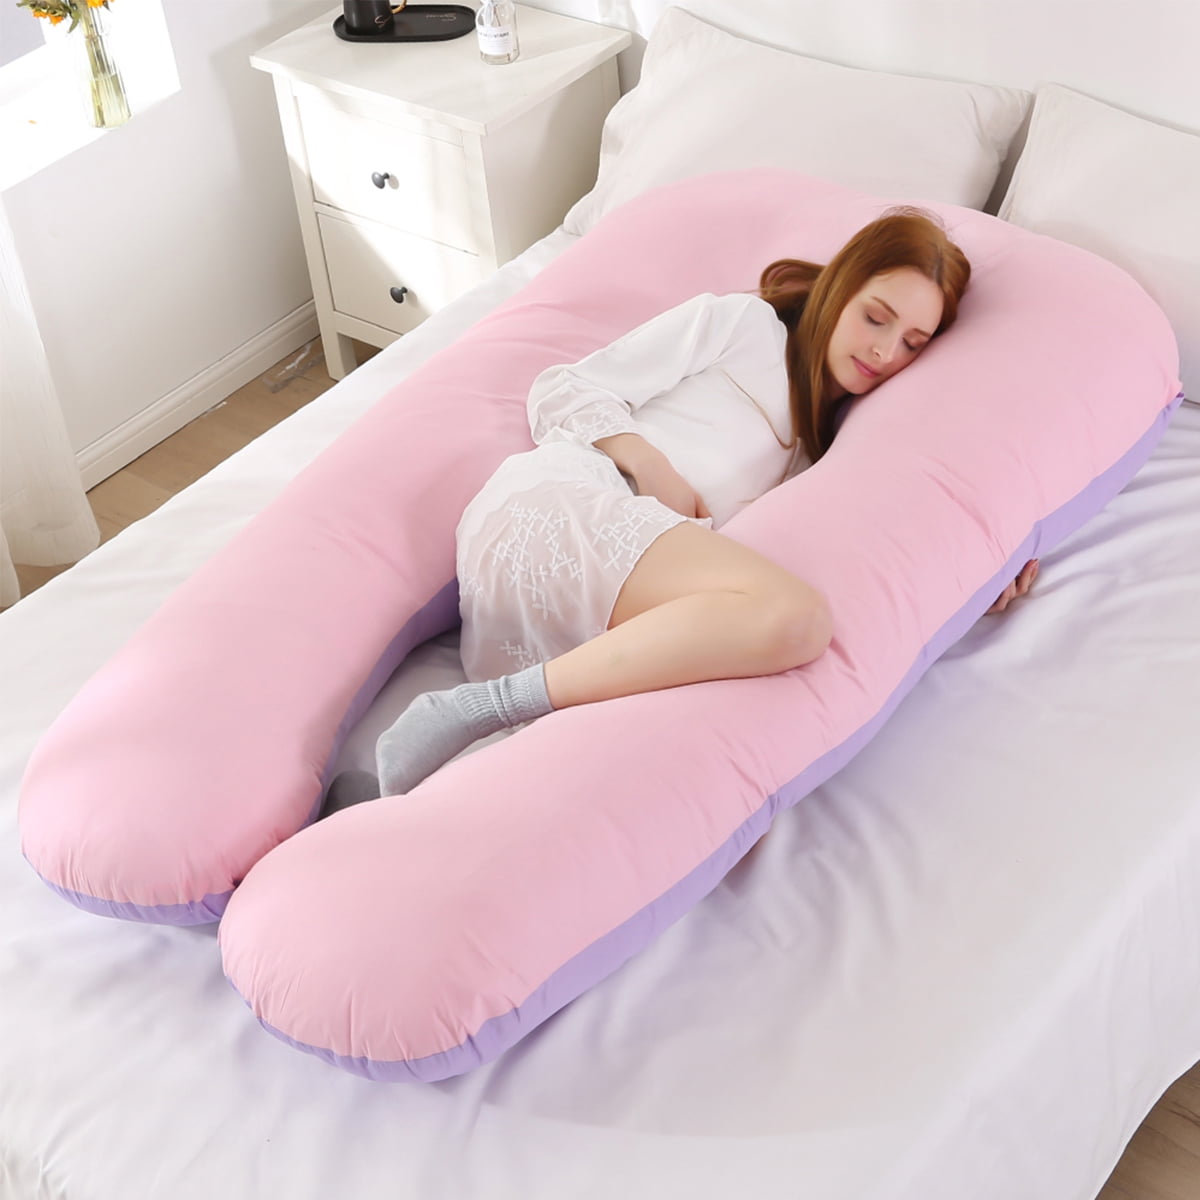 large u shaped body pillow